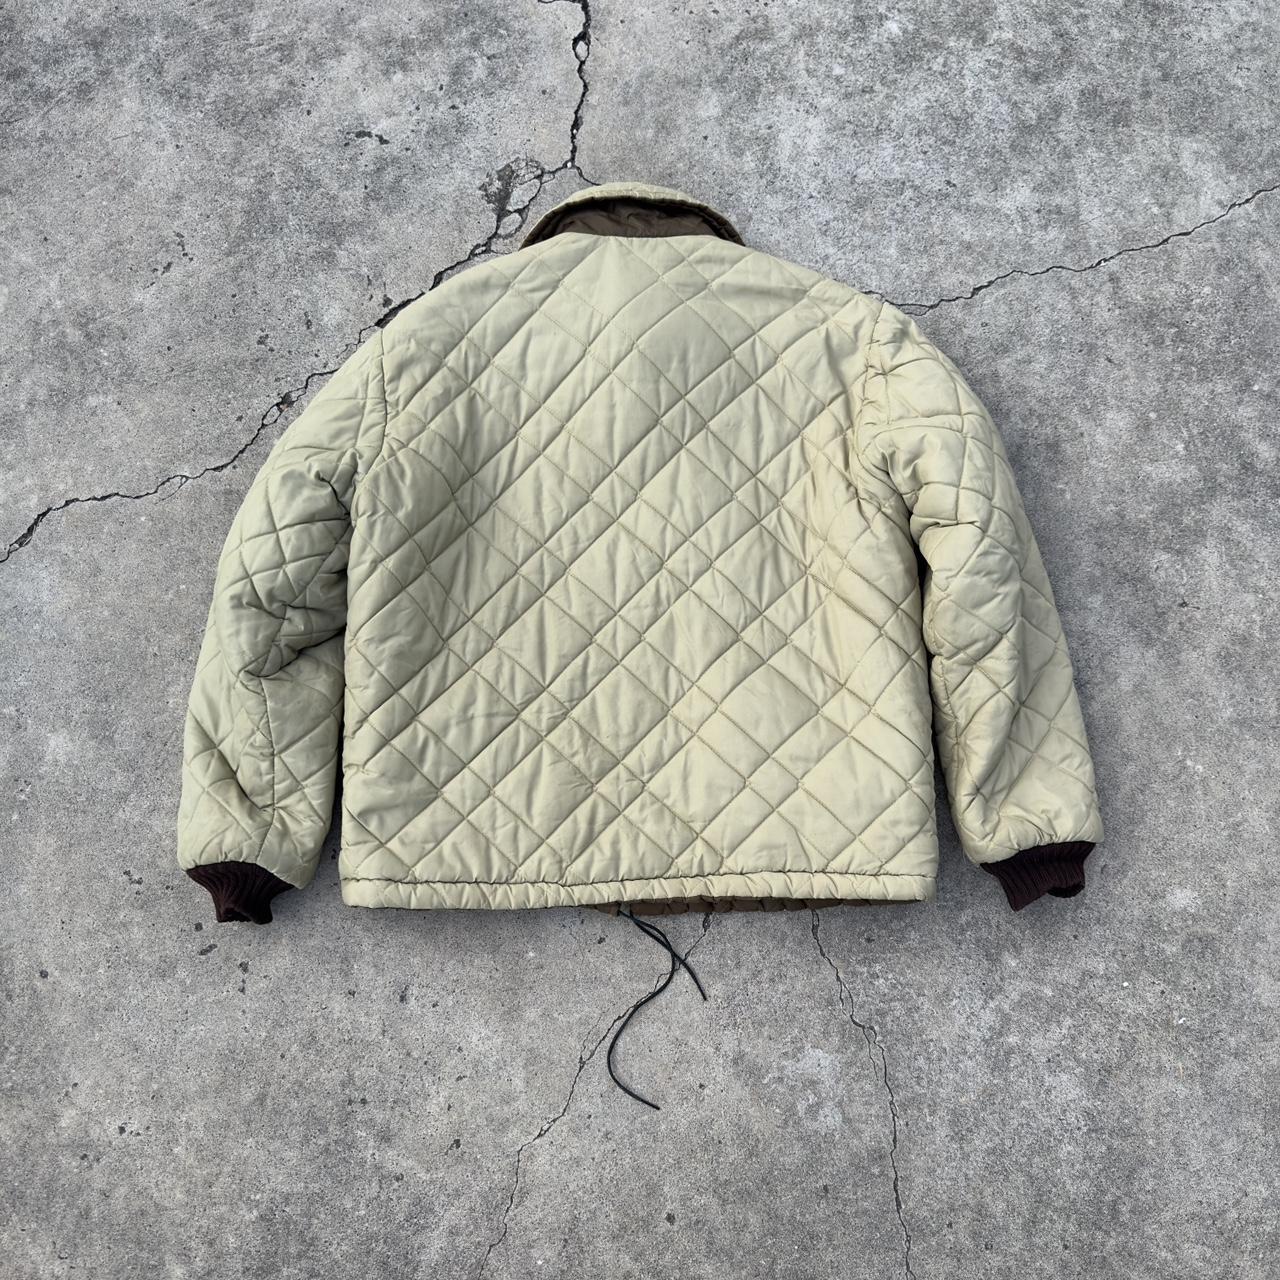 vintage 70s puffer jacket reversible size L... - Depop